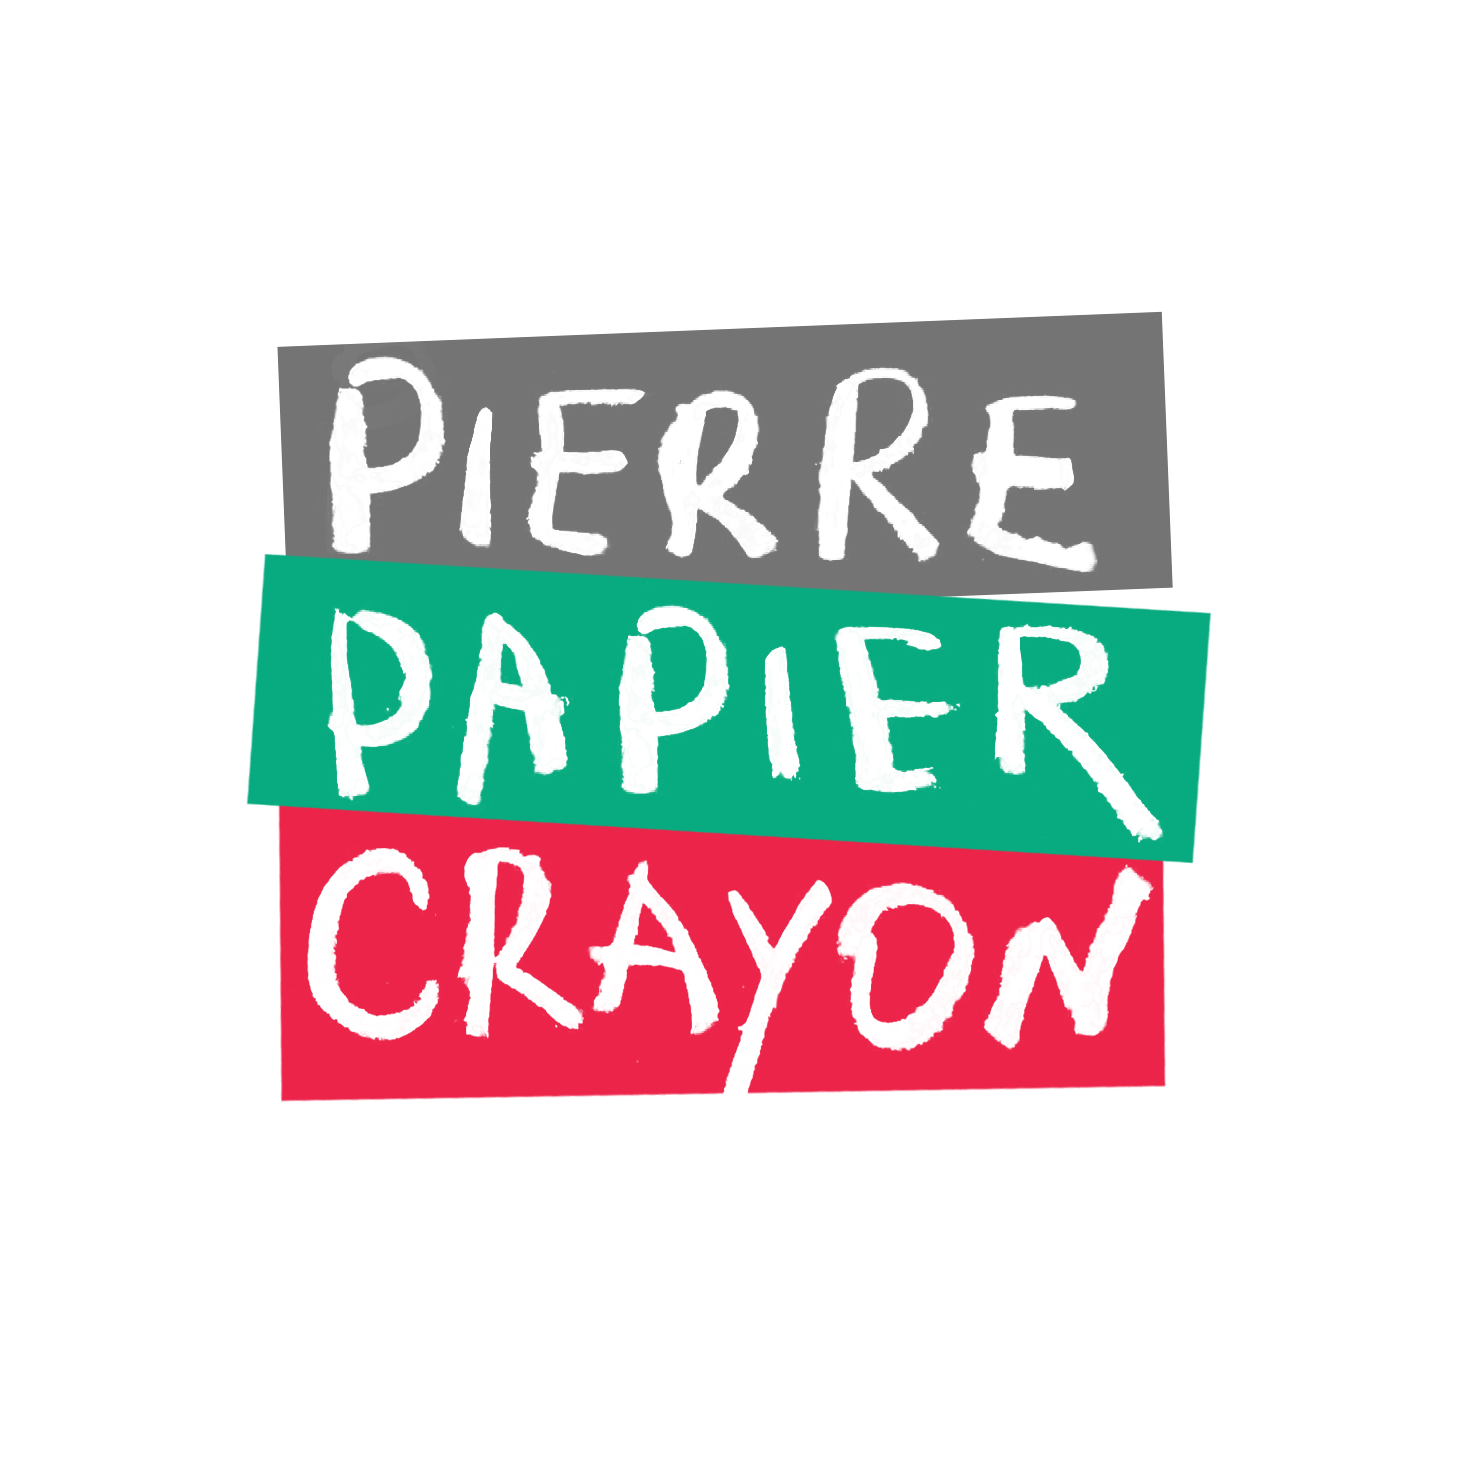 Pierre Papier Crayon